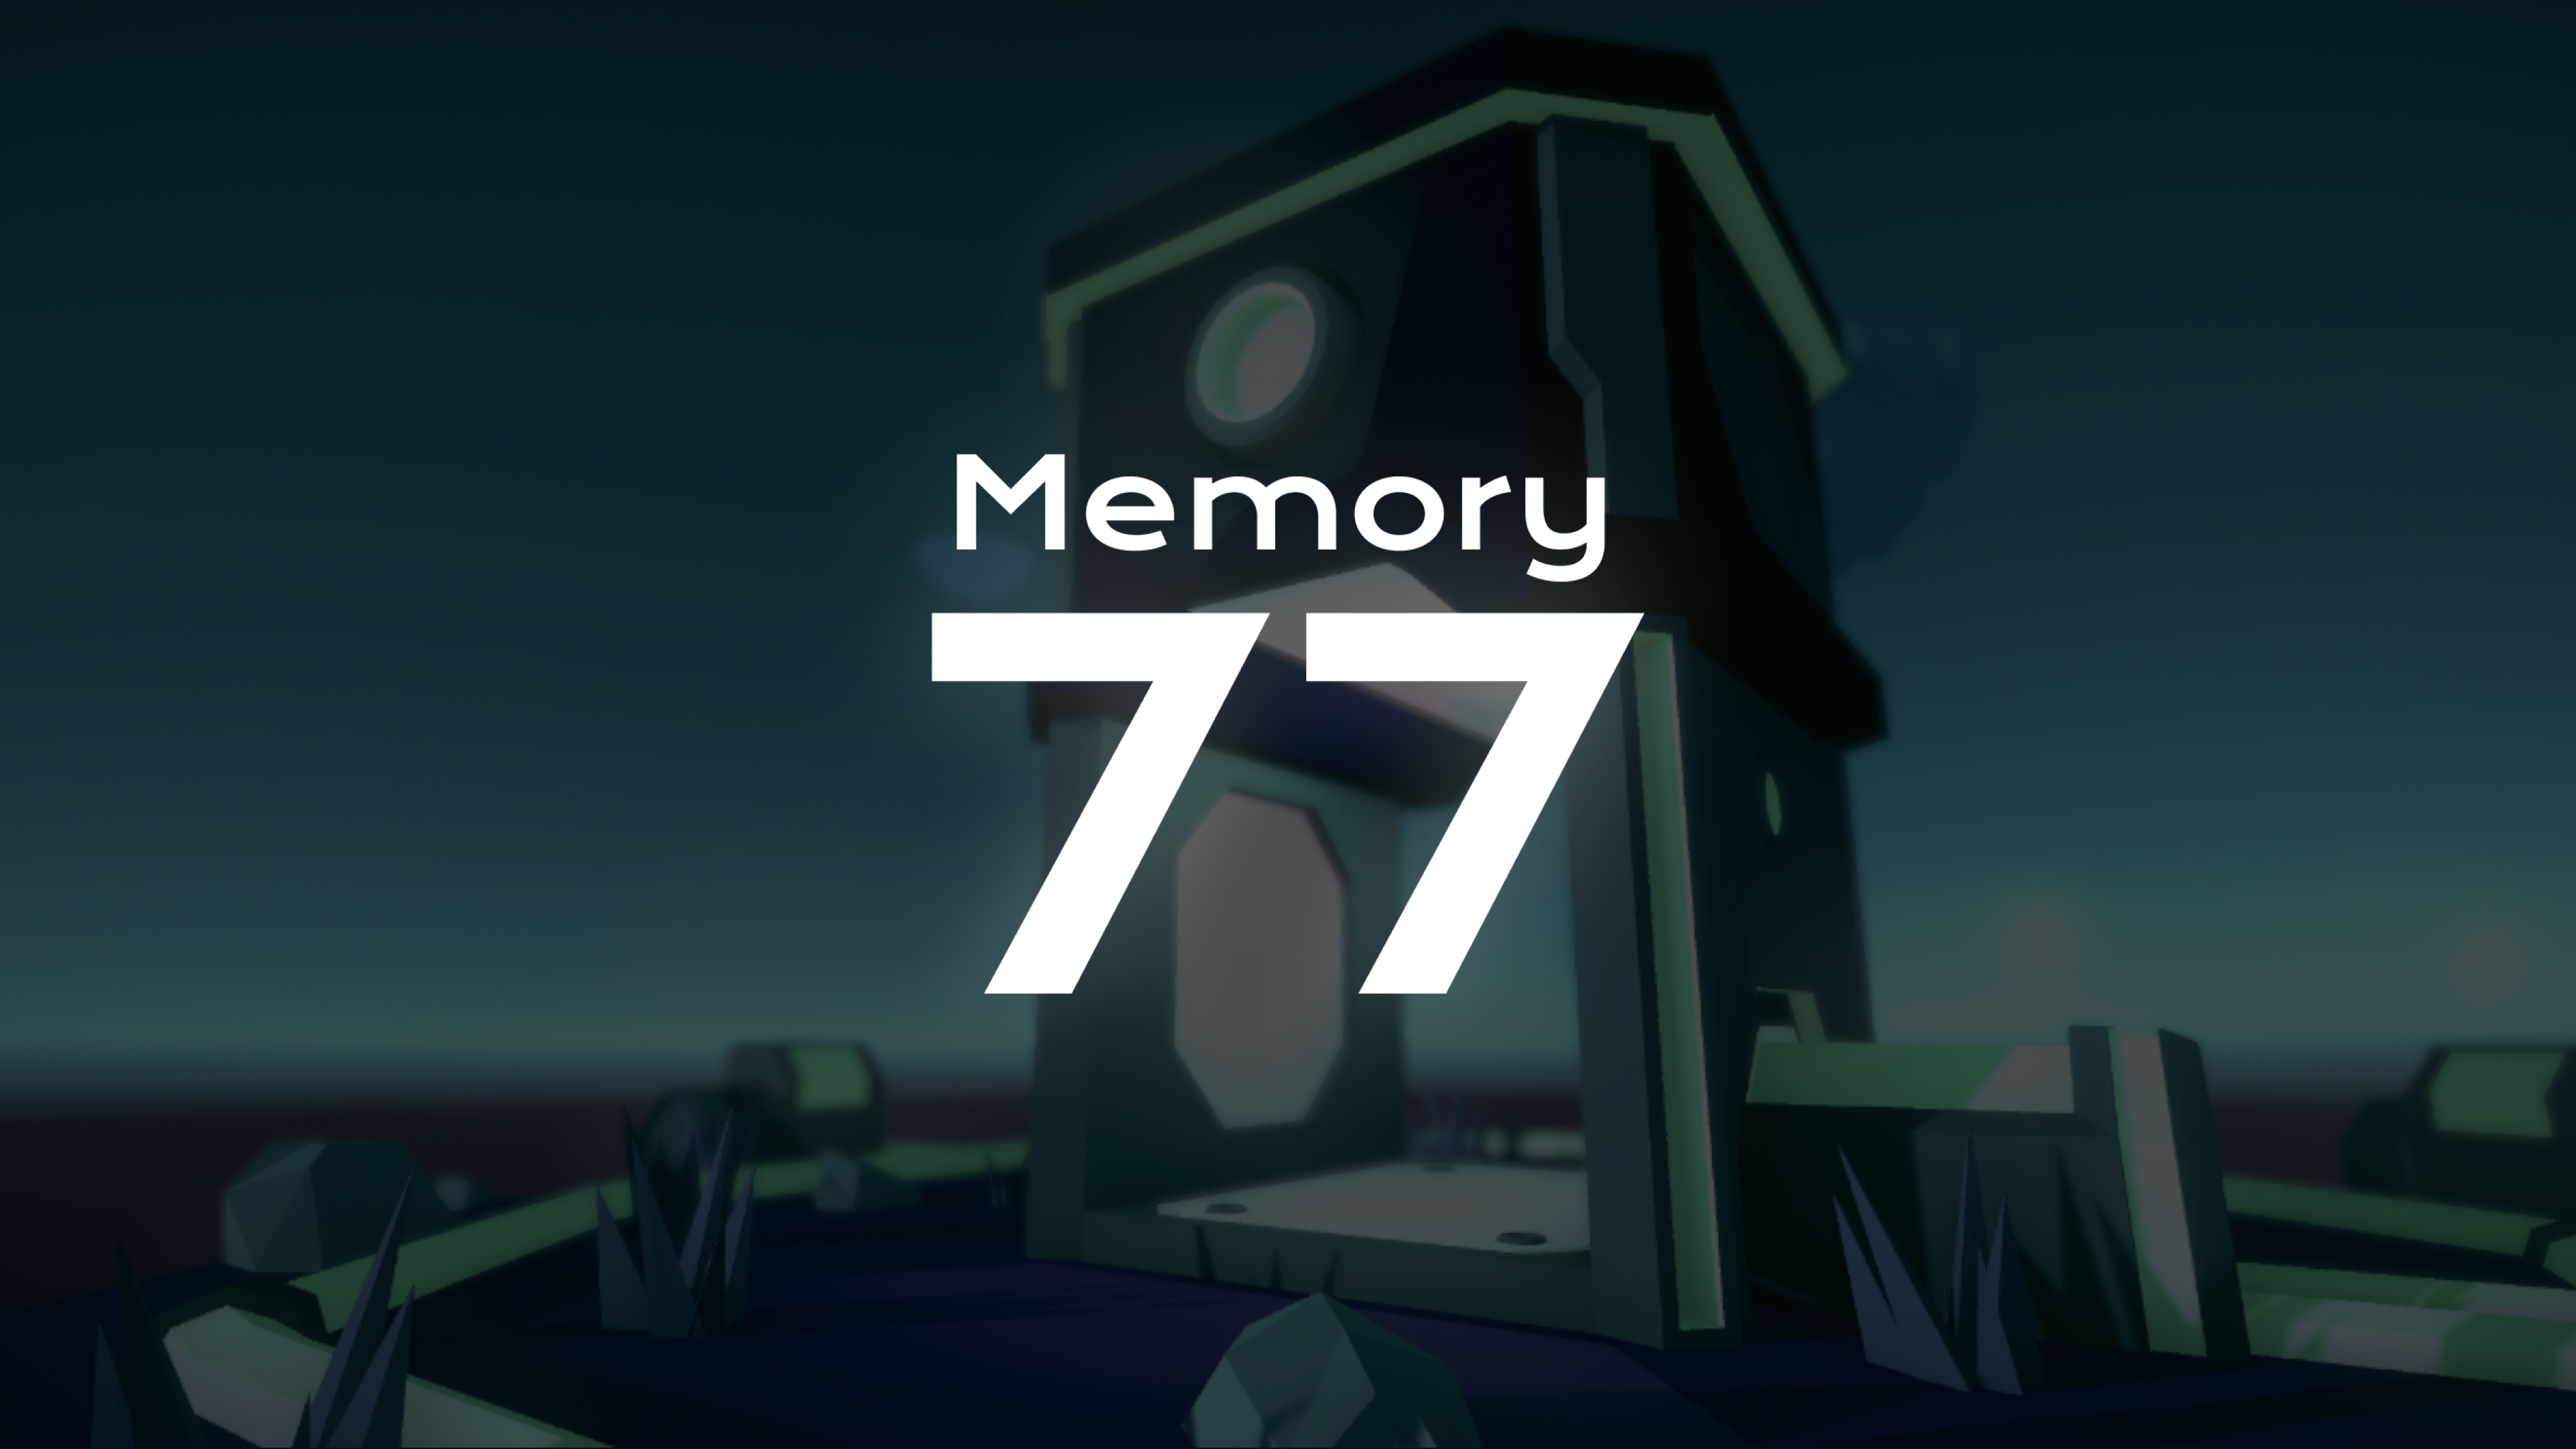 Memory 77